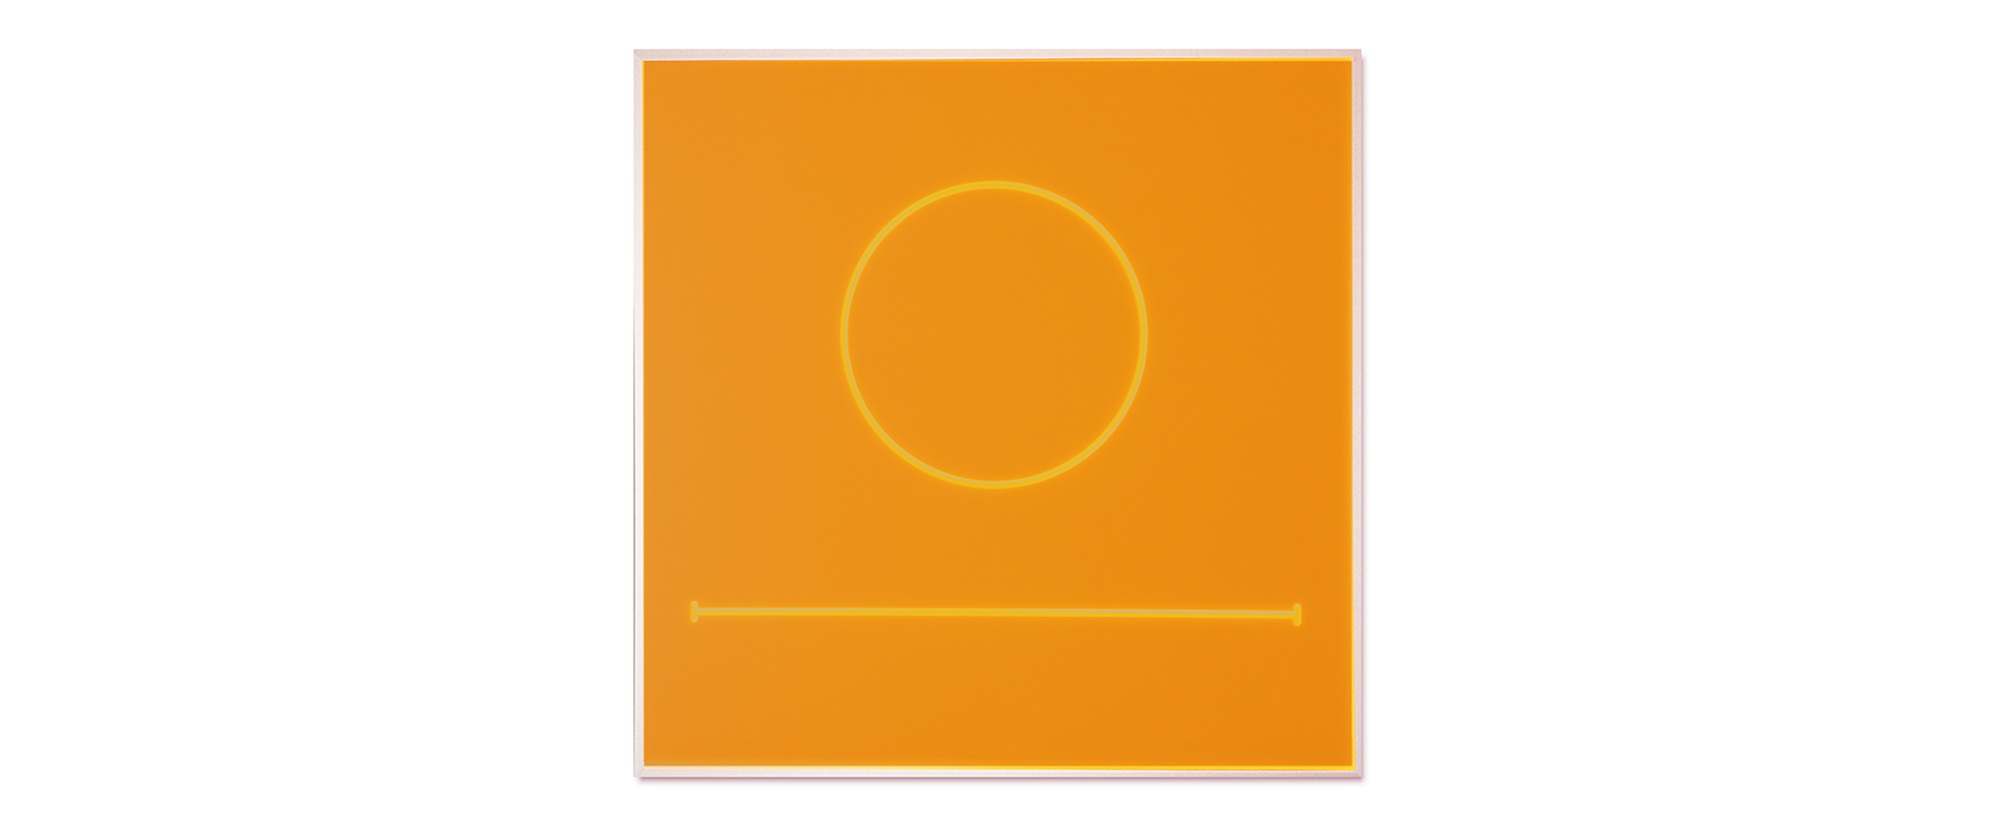 "Unendlich, endlich" - 2020, Acrylglas orange, fluoreszierend, Auflage 3 + 1 A.P., 1 PT, 50 x 50 x 0,3 cm